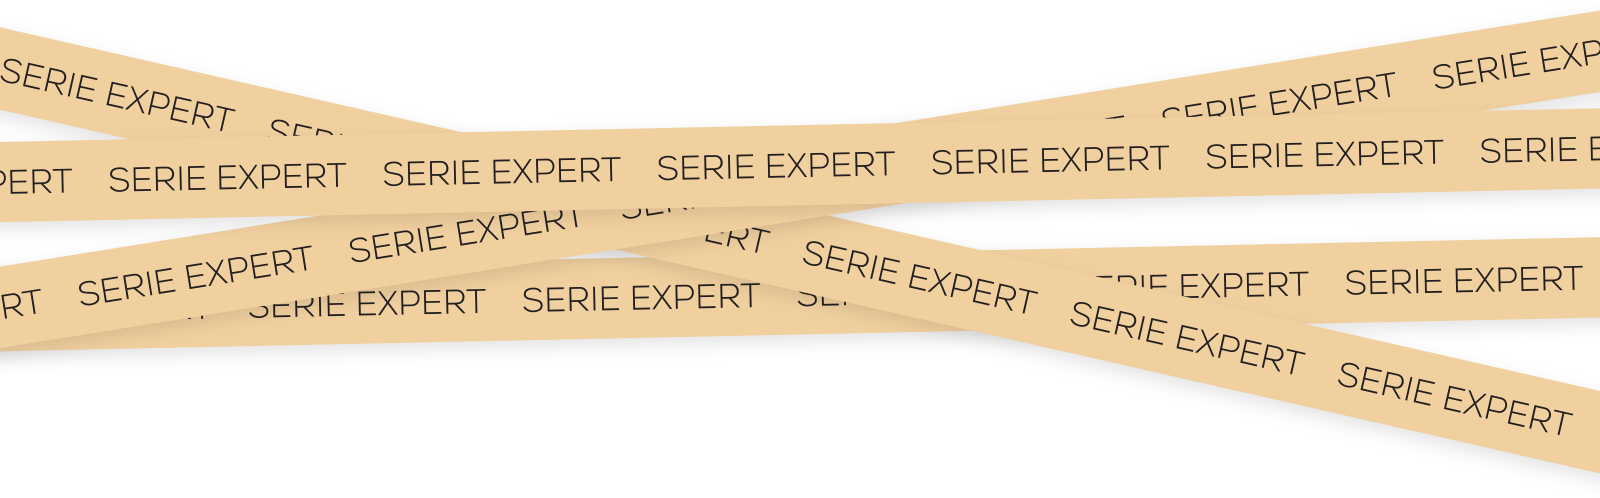 Serie expert tape illustration